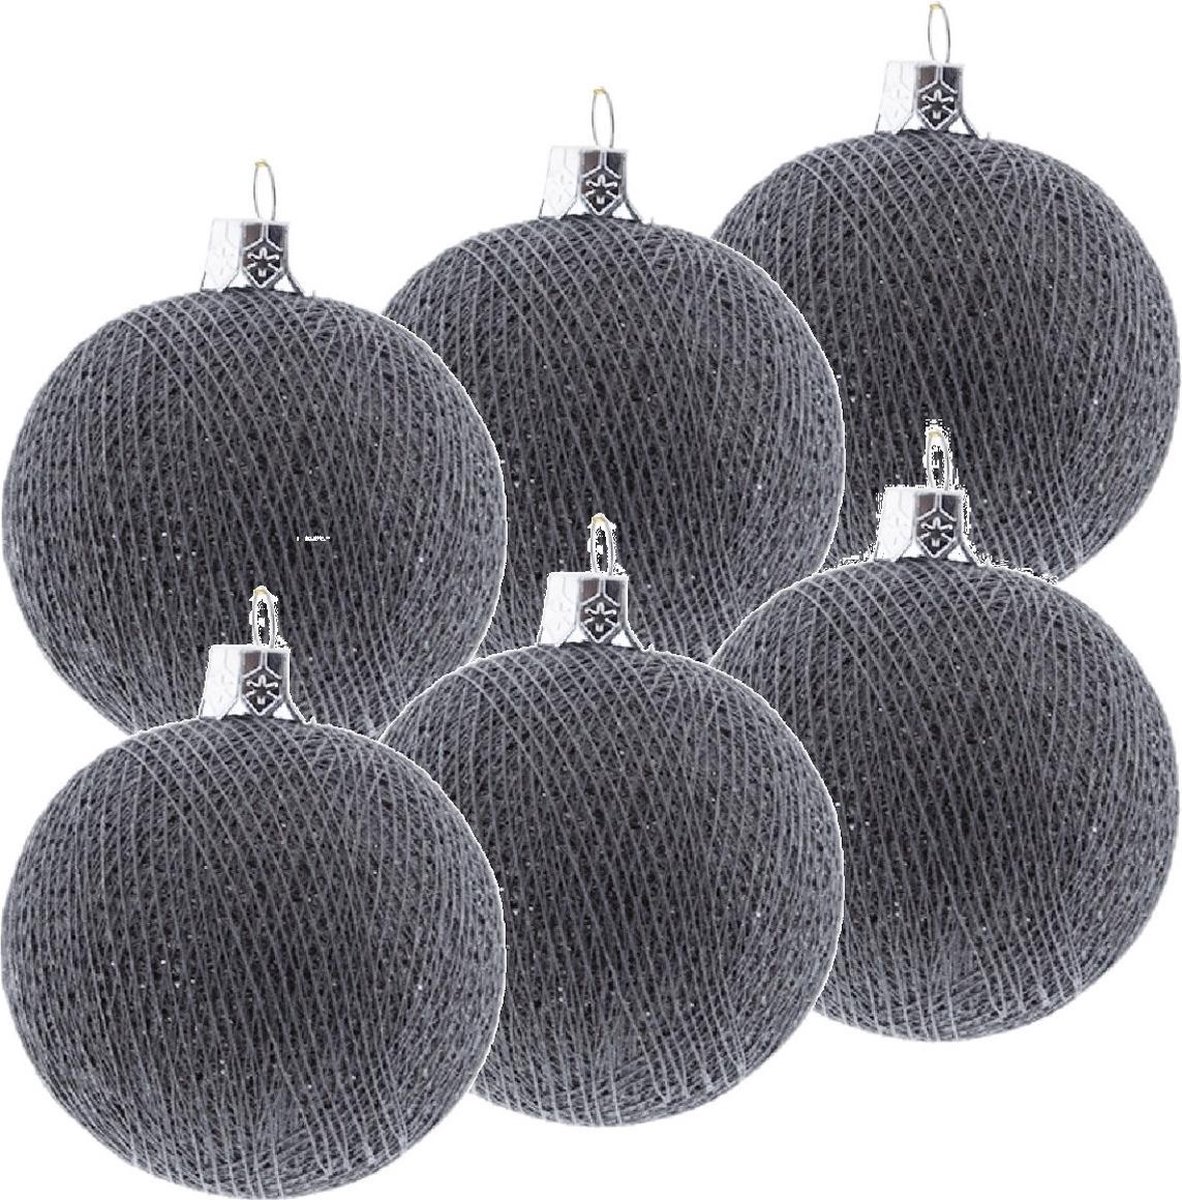 6x Grijze Cotton Balls kerstballen 6,5 cm - Kerstversiering - Kerstboomdecoratie - Kerstboomversiering - Hangdecoratie - Kerstballen in de kleur grijs